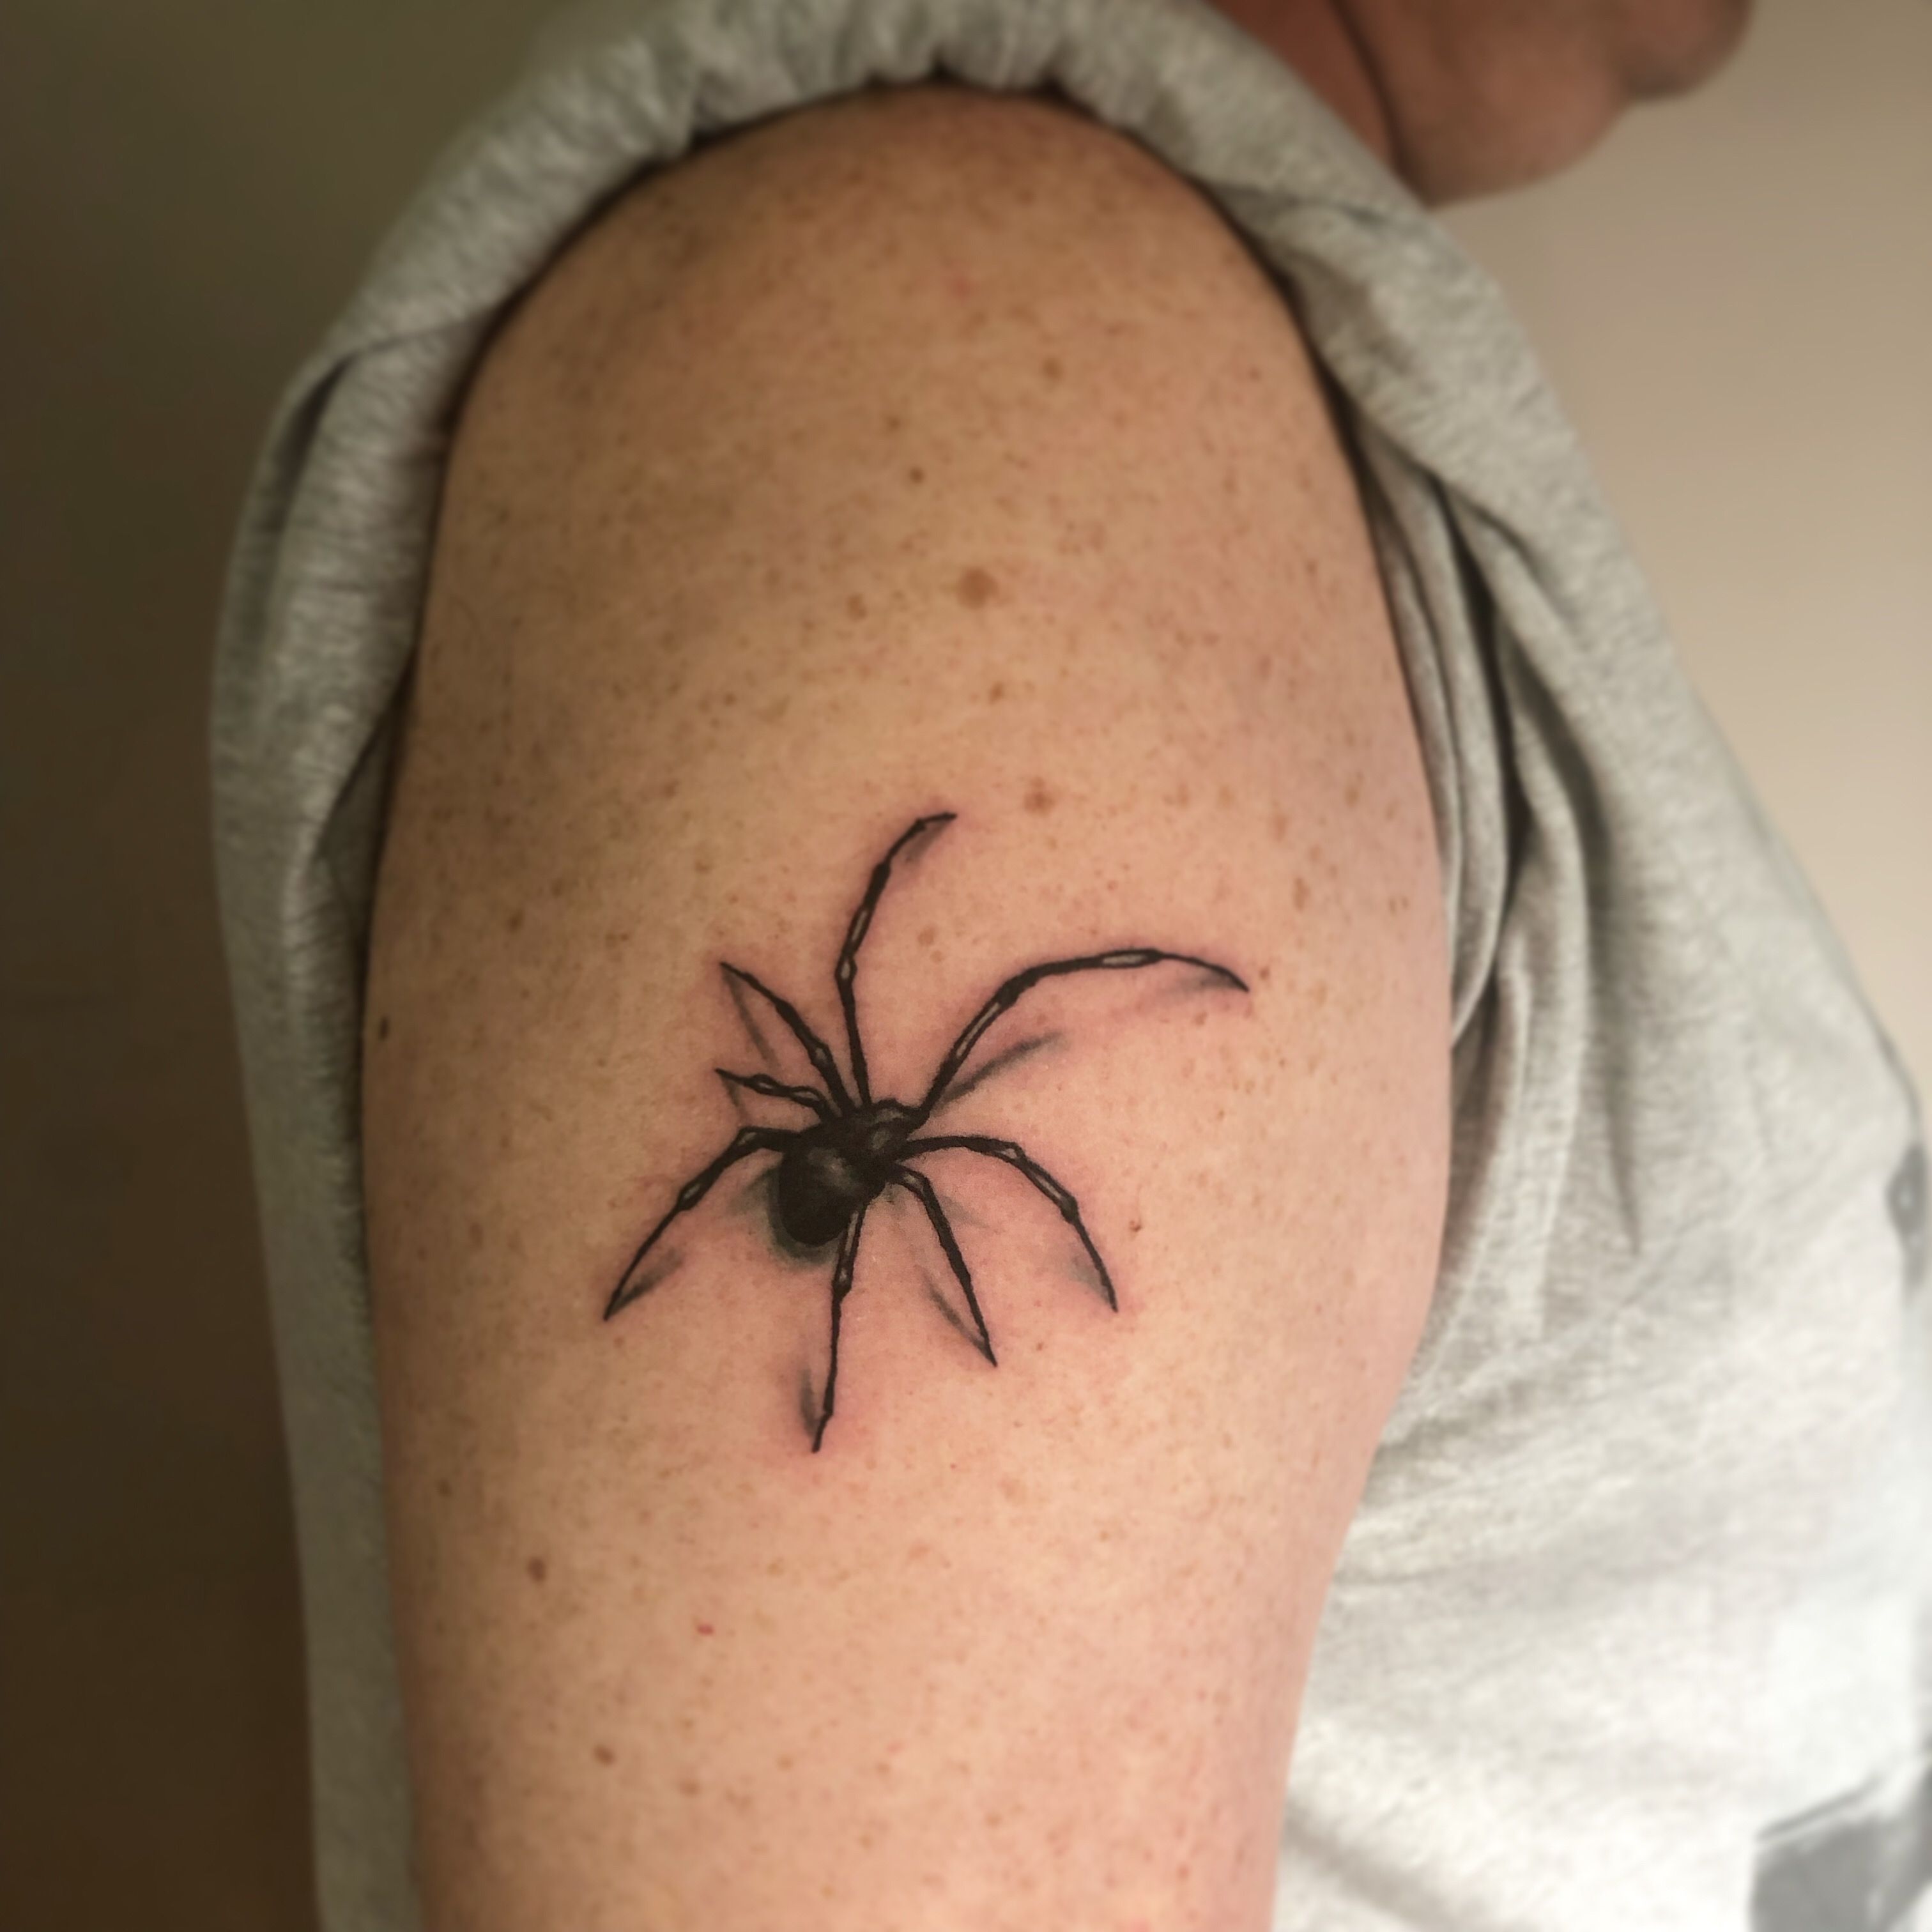 Top 10 Spider Tattoo Ideas Best Spider Tattoos  MrInkwells